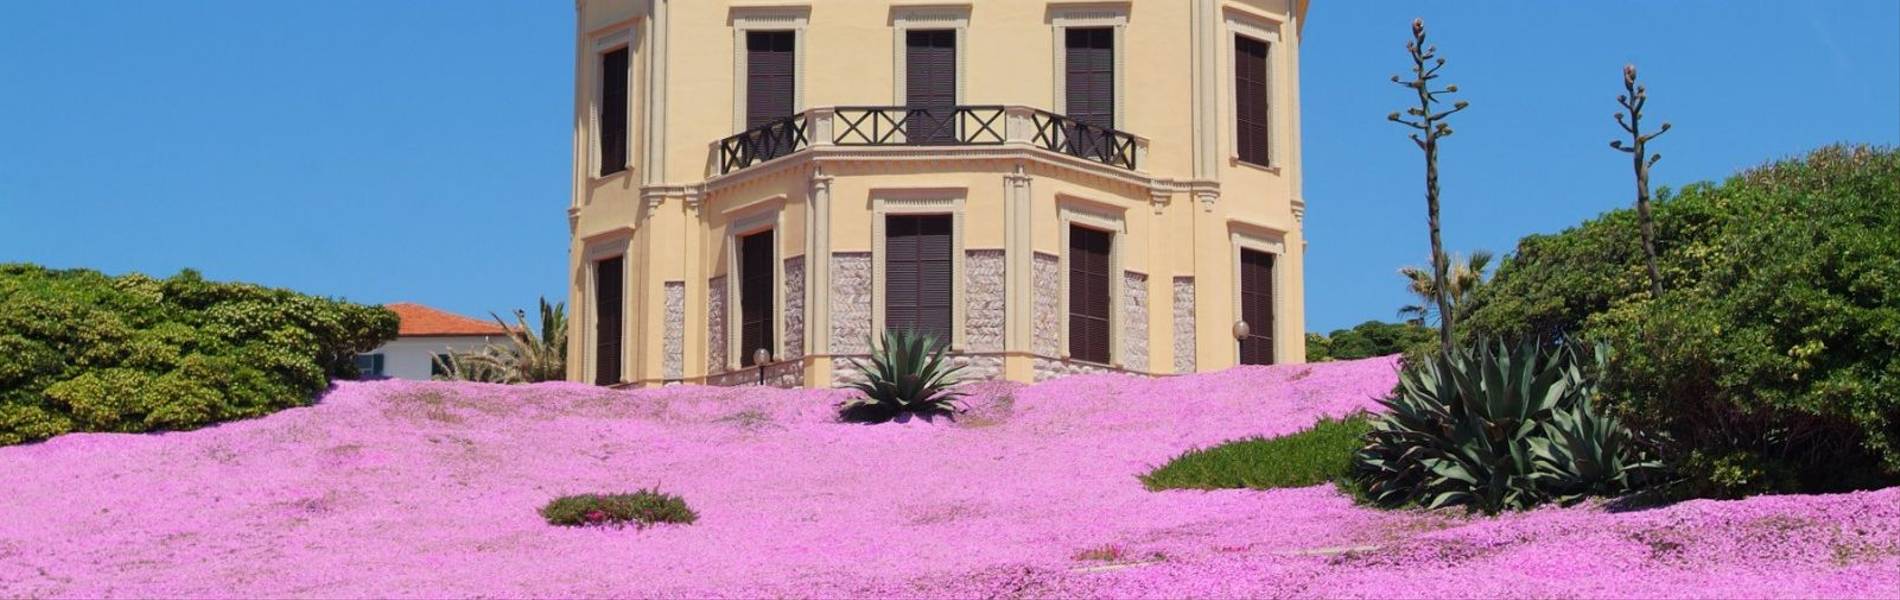 Villa Mosca, Sardinia, Italy (4).jpg